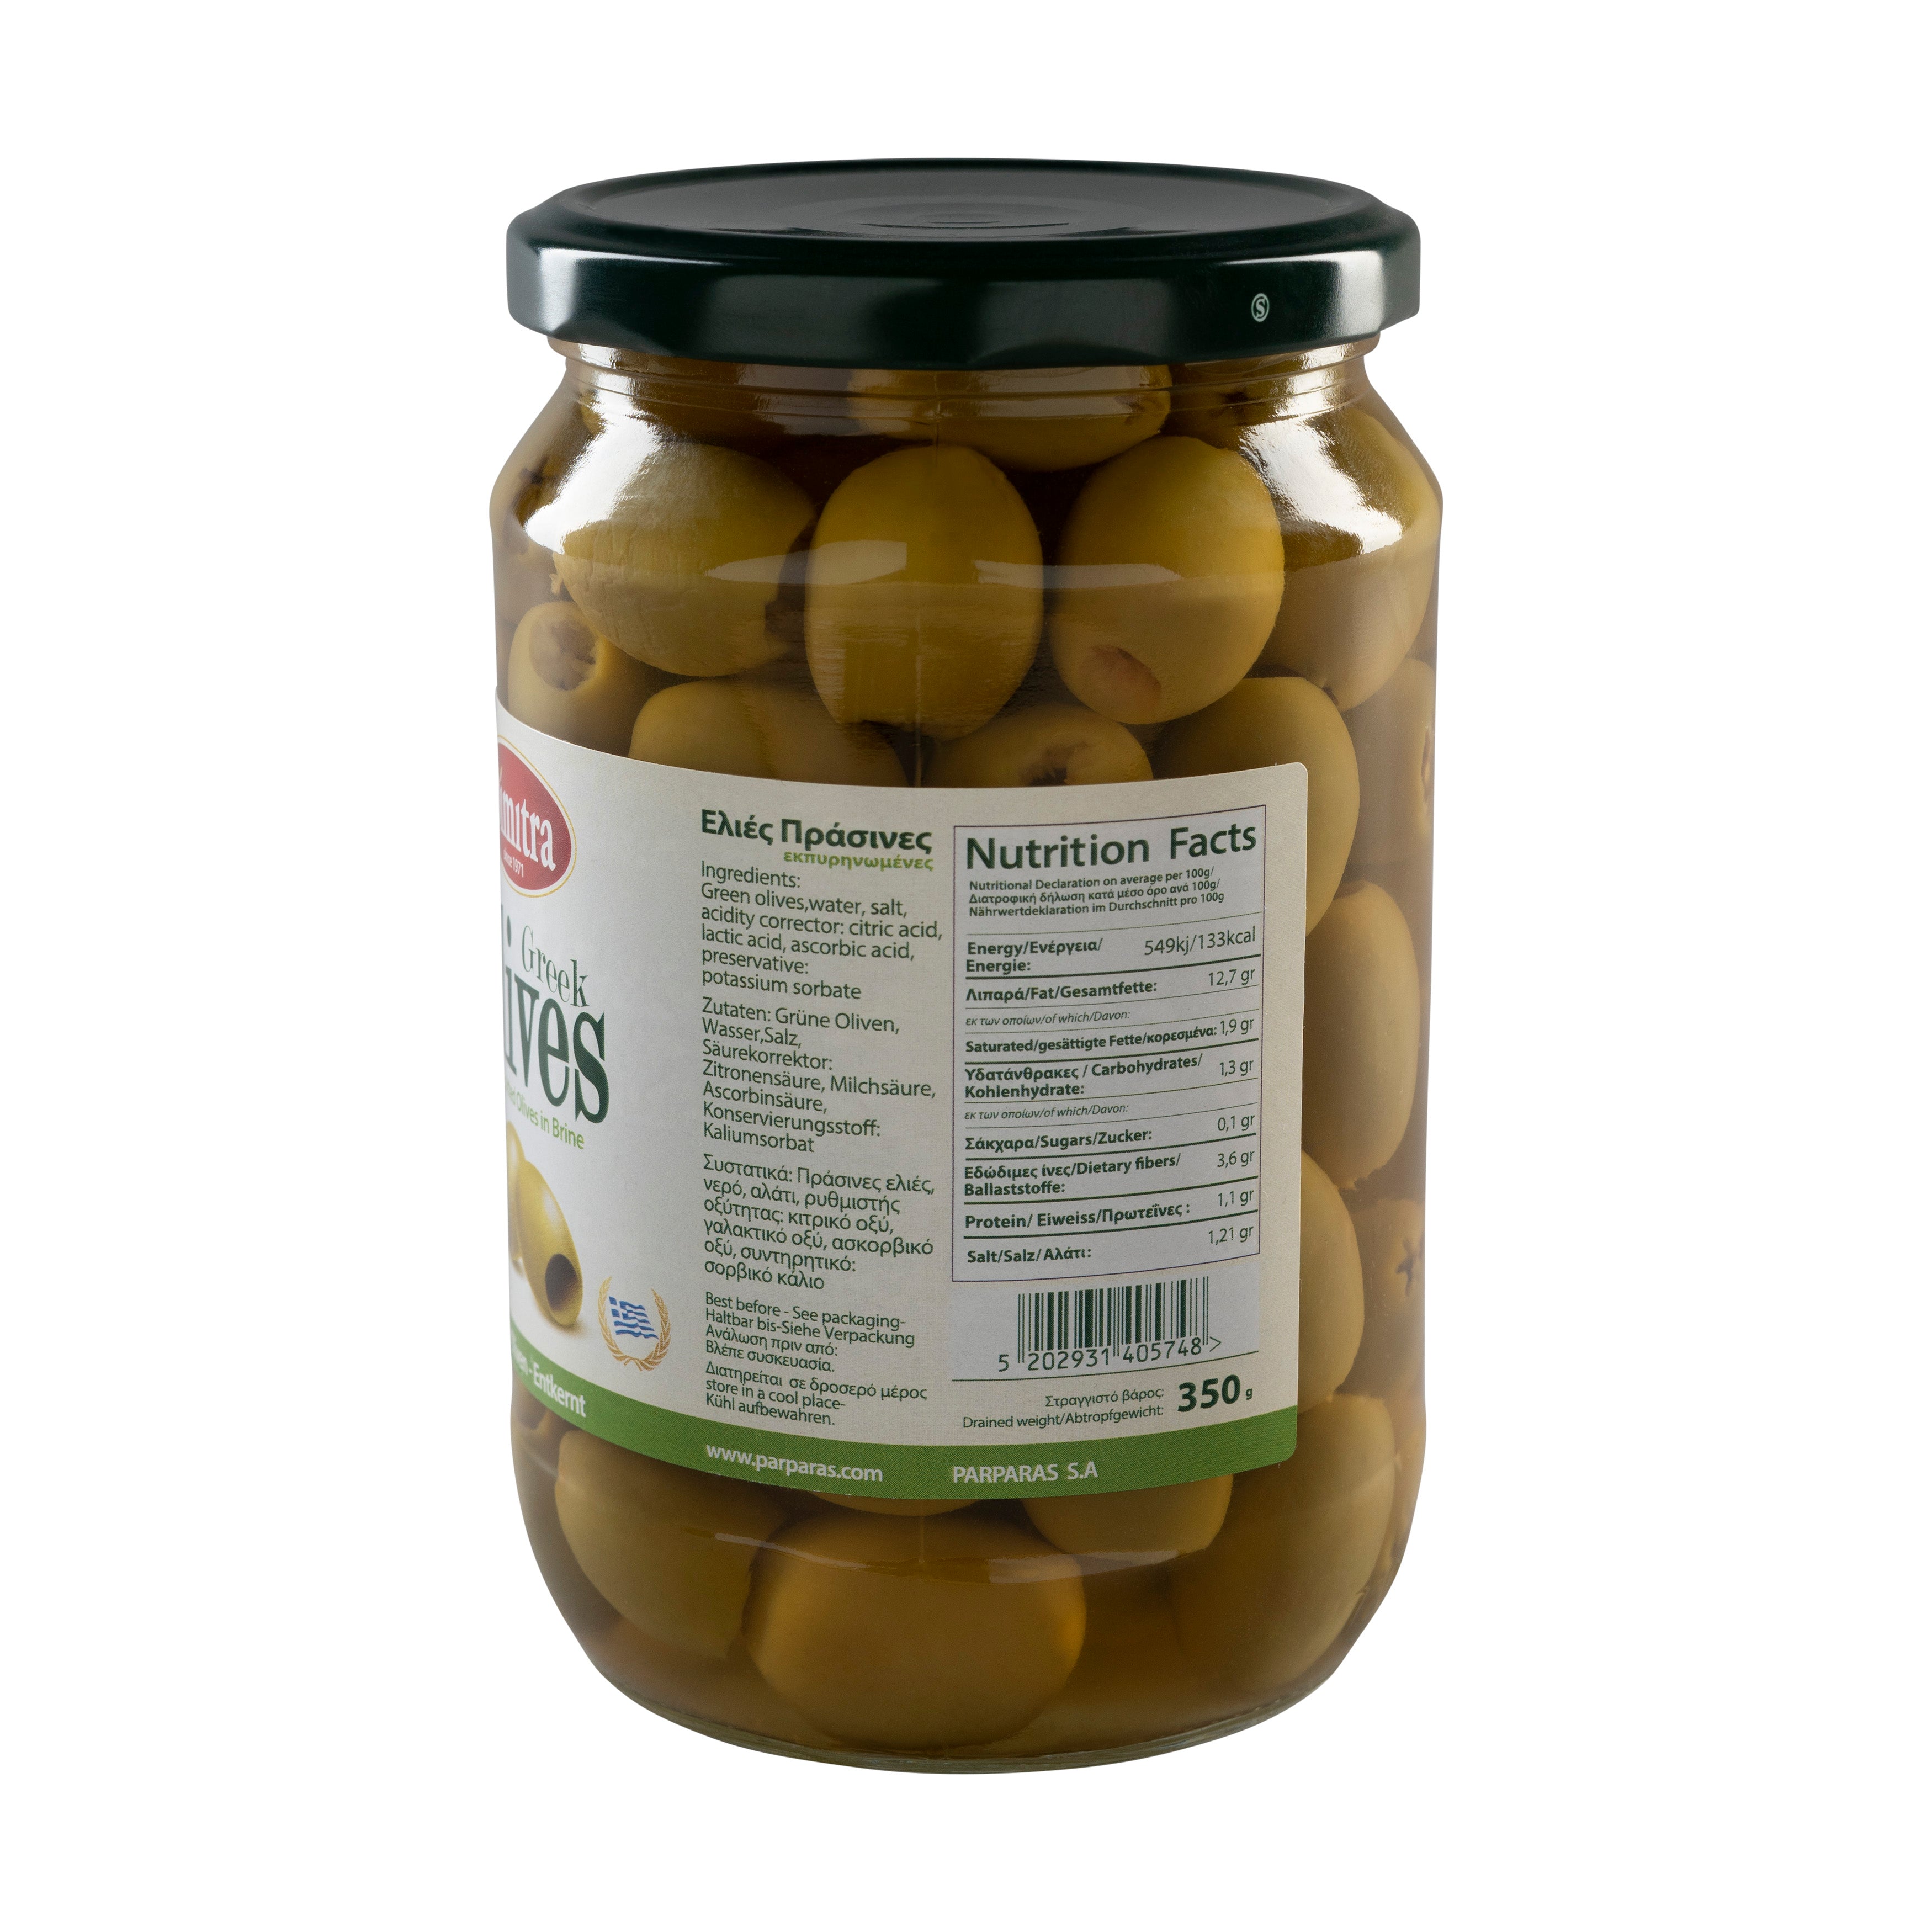 Dimitra Parparas Grüne Oliven ohne Kerne 350 g